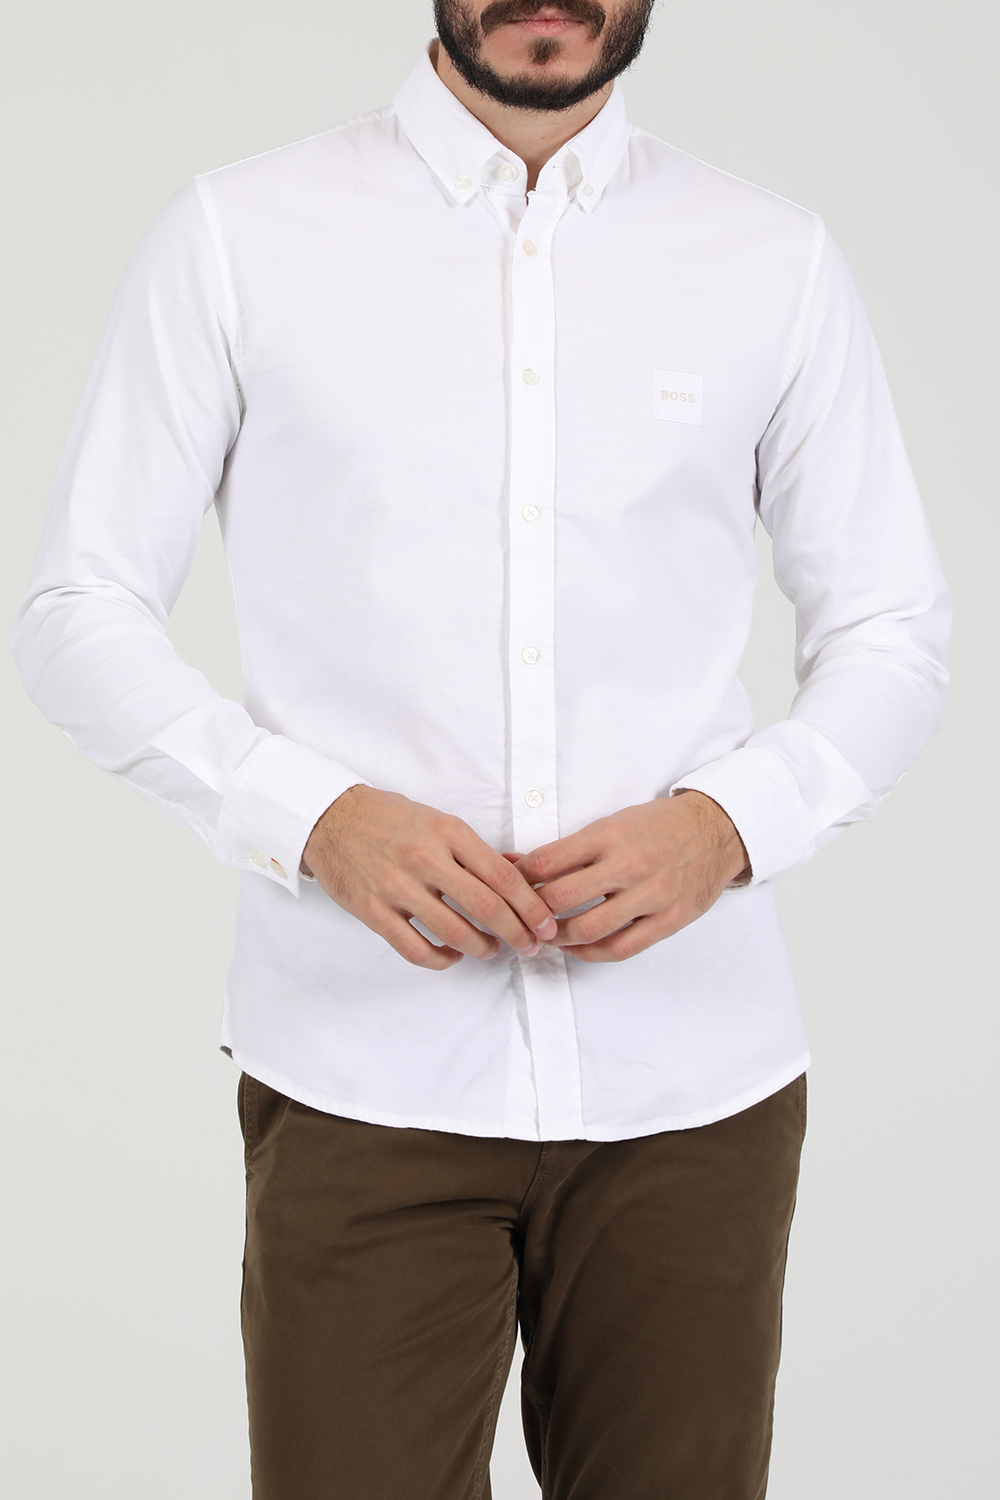 Ανδρικά/Ρούχα/Πουκάμισα/Μακρυμάνικα BOSS - Ανδρικό βαμβακερό πουκάμισο BOSS Mabsoot_1 λευκό